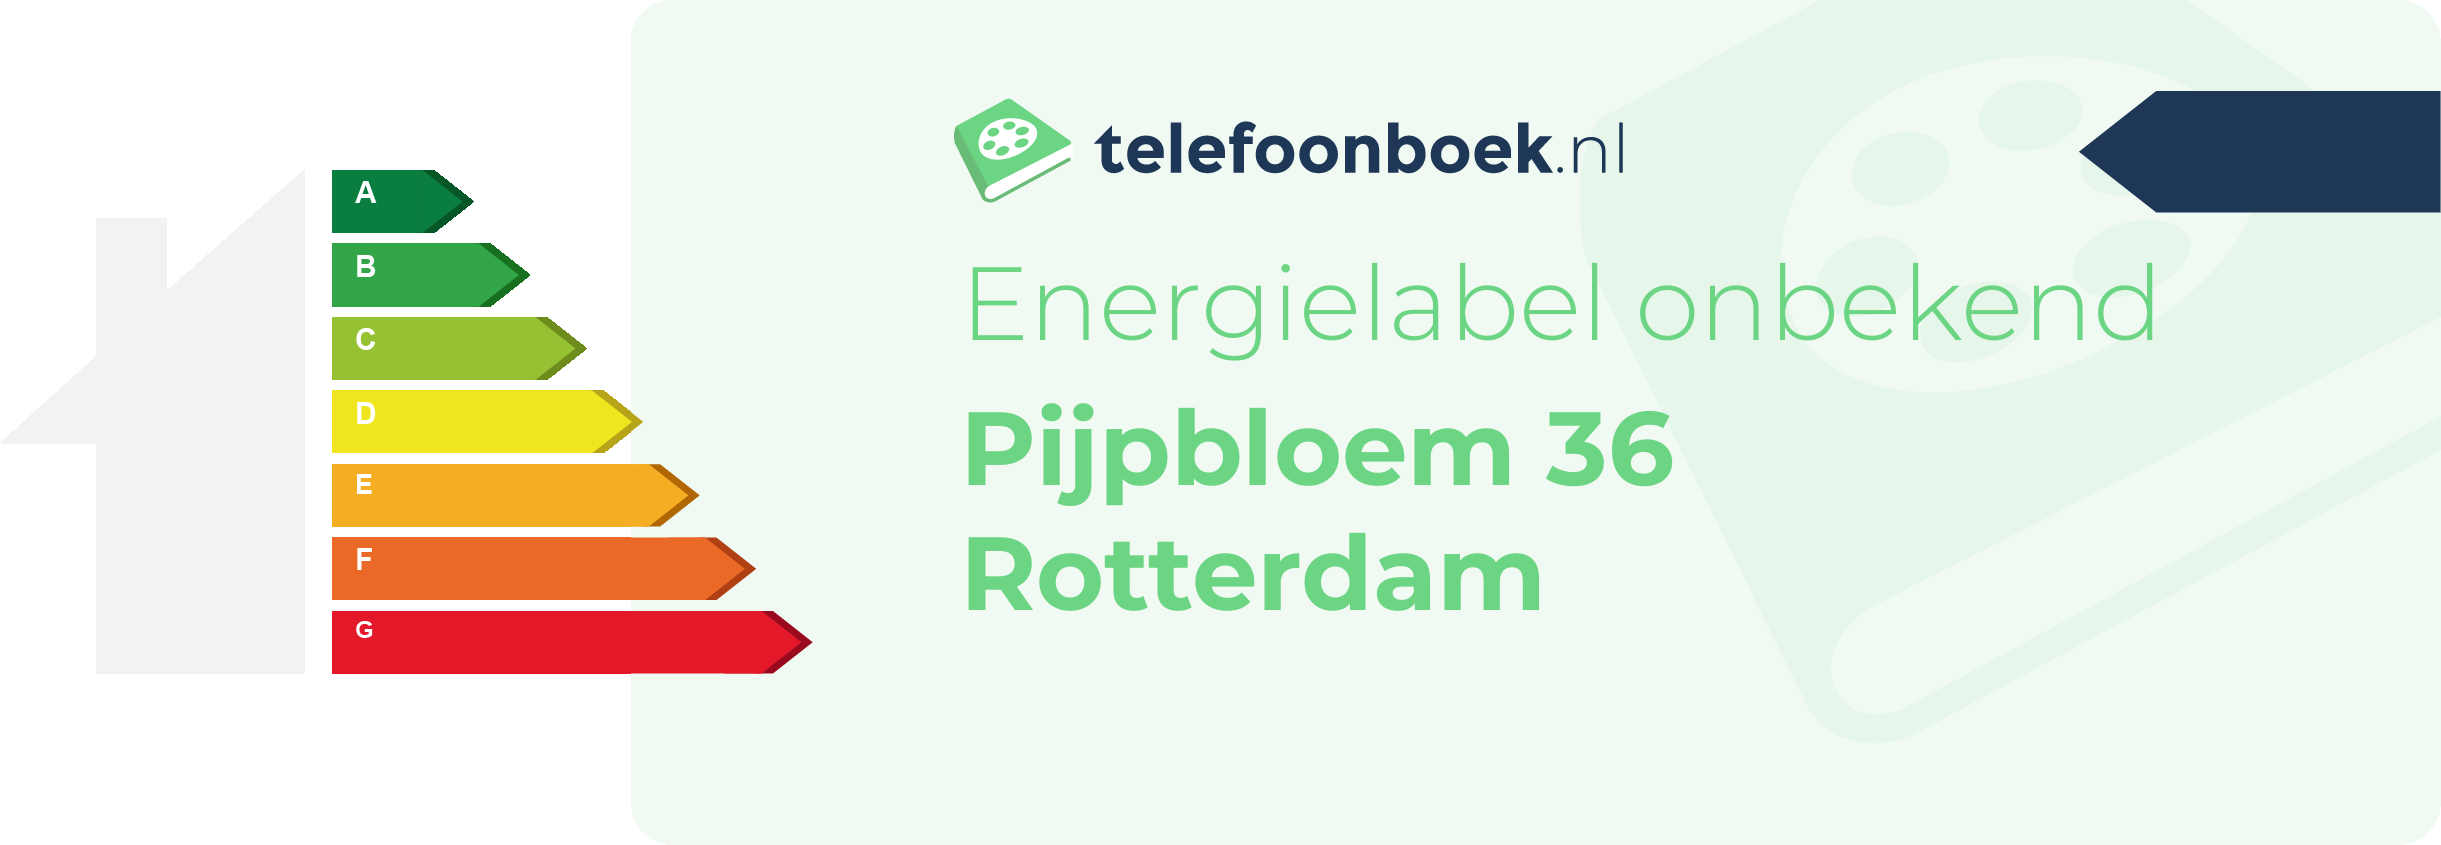 Energielabel Pijpbloem 36 Rotterdam